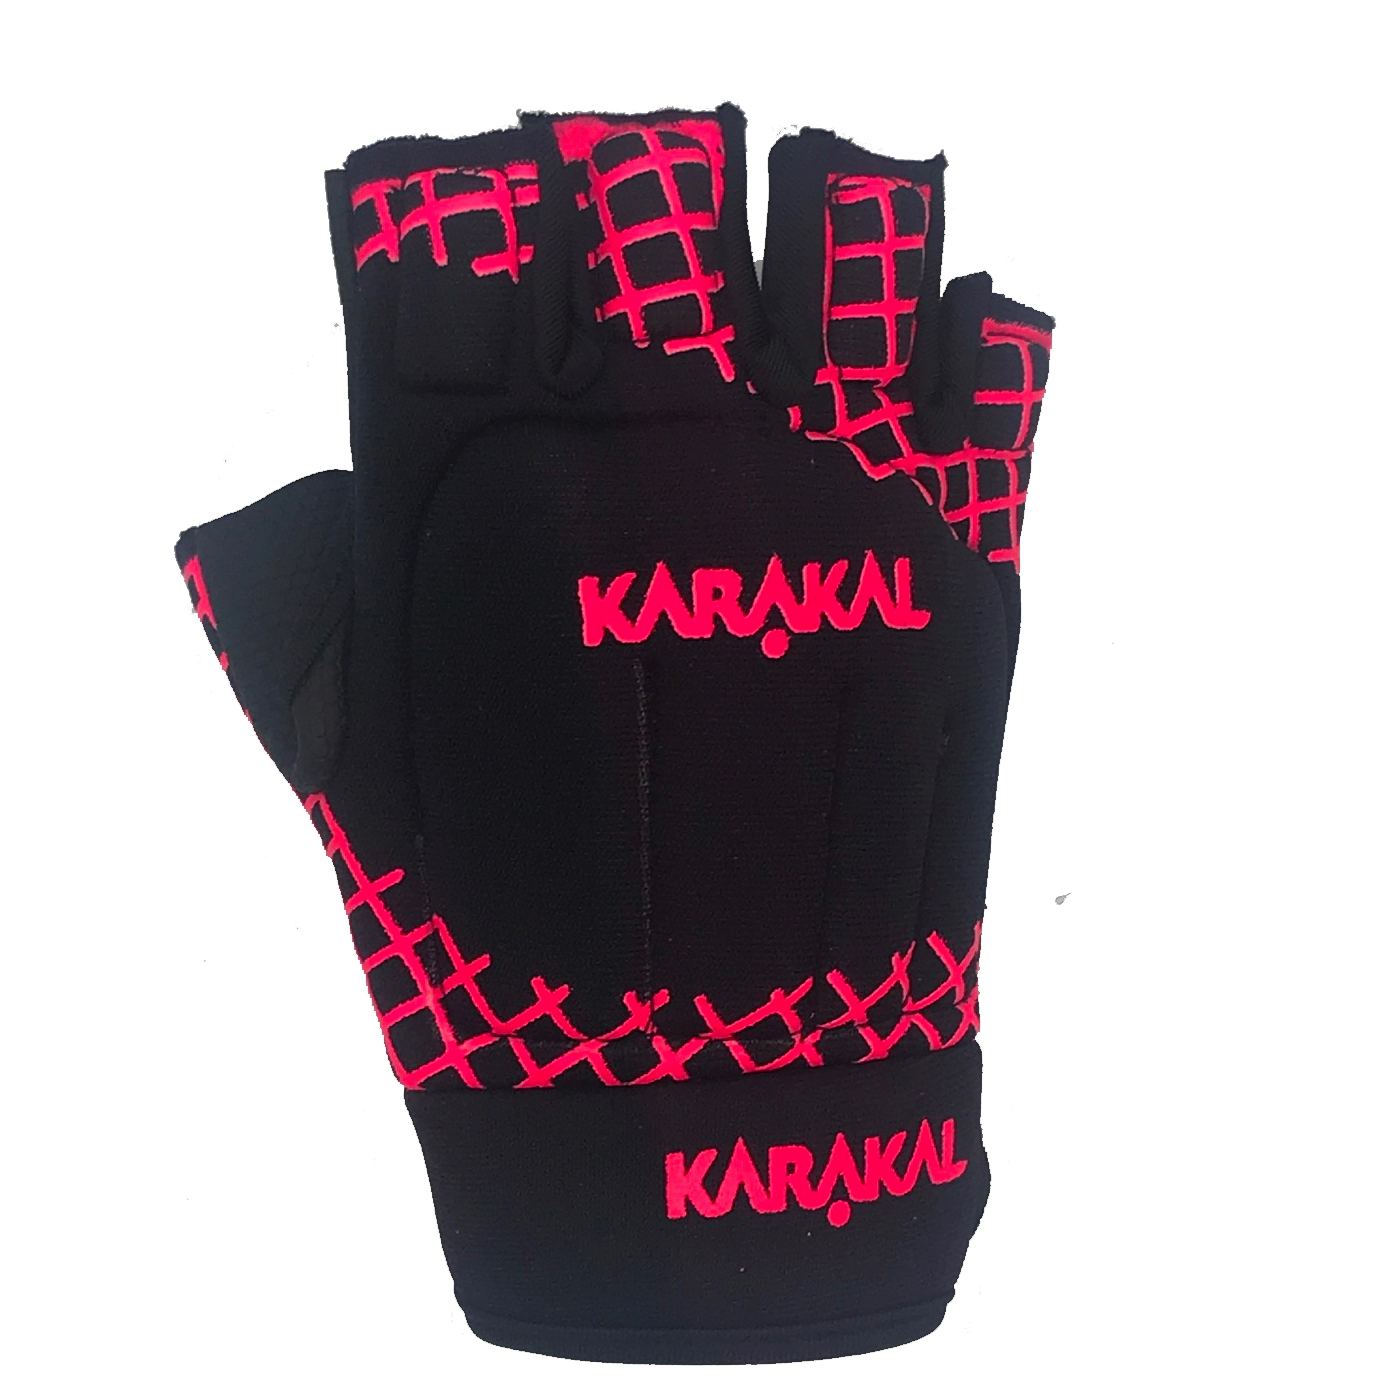 Karakal Pro Hurling Glove Right Hand Junior